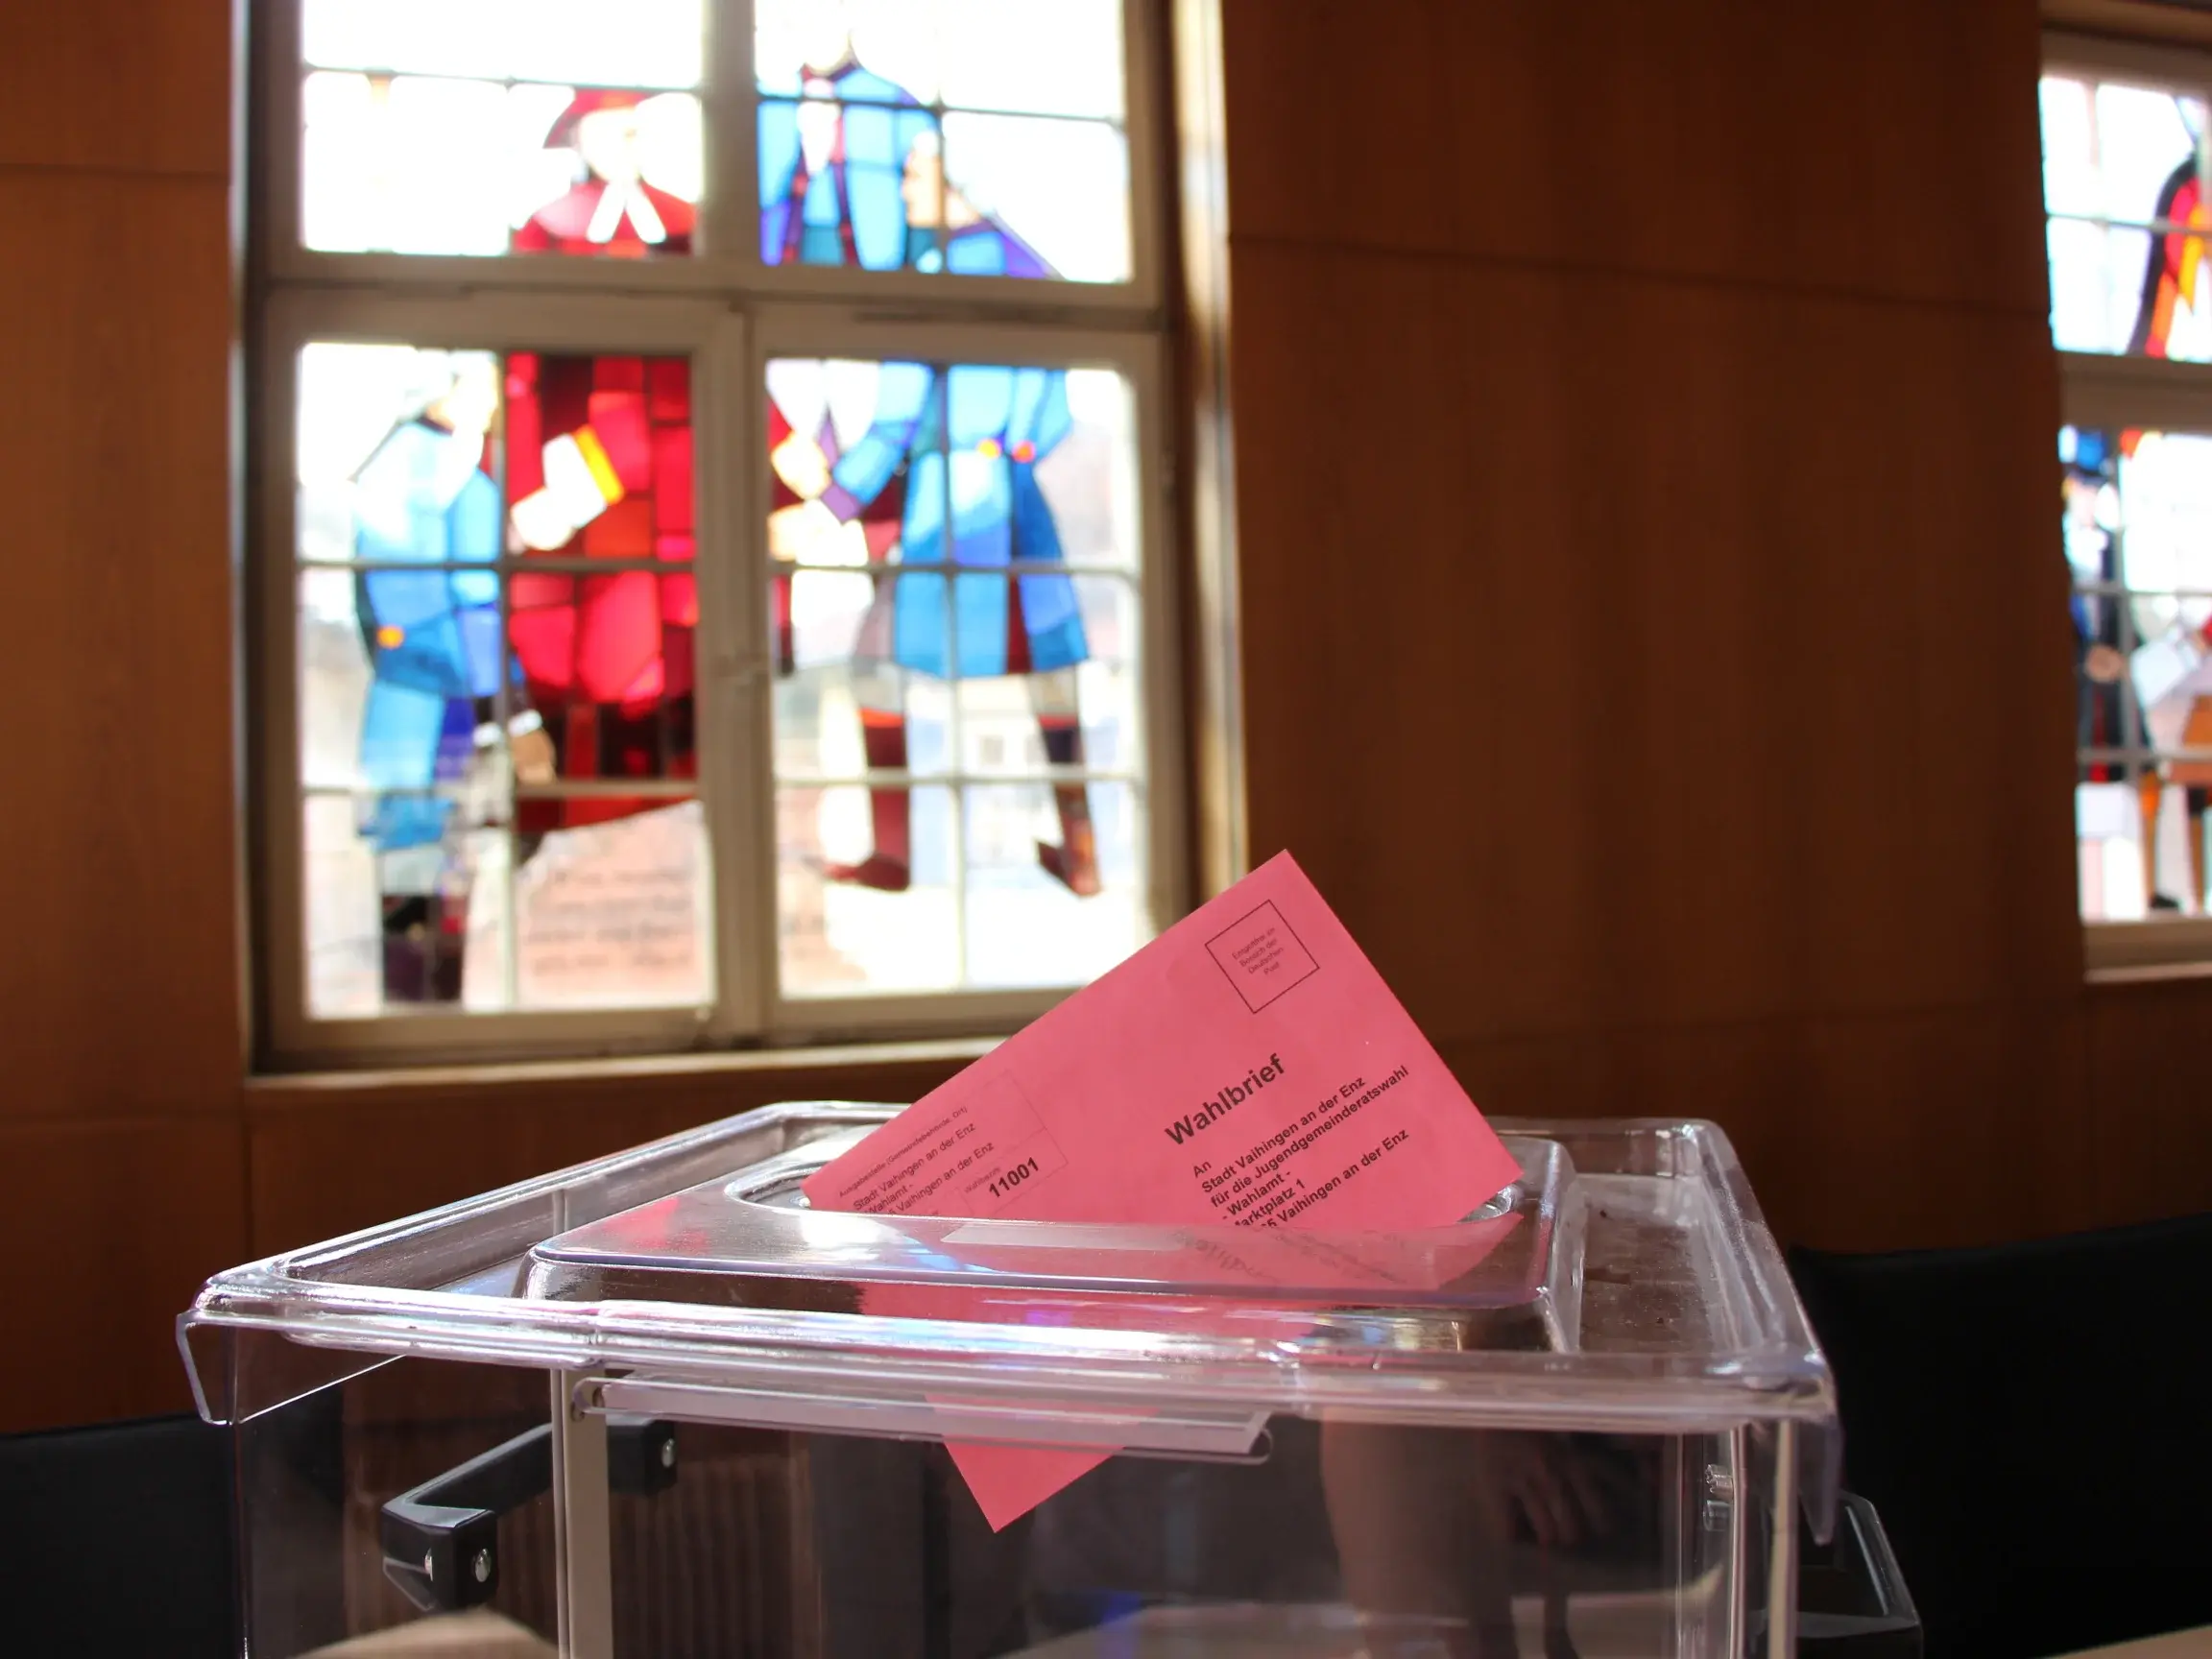 Blick auf eine Wahlurne mit Stimmzettel, der im oberen Schlitz steckt